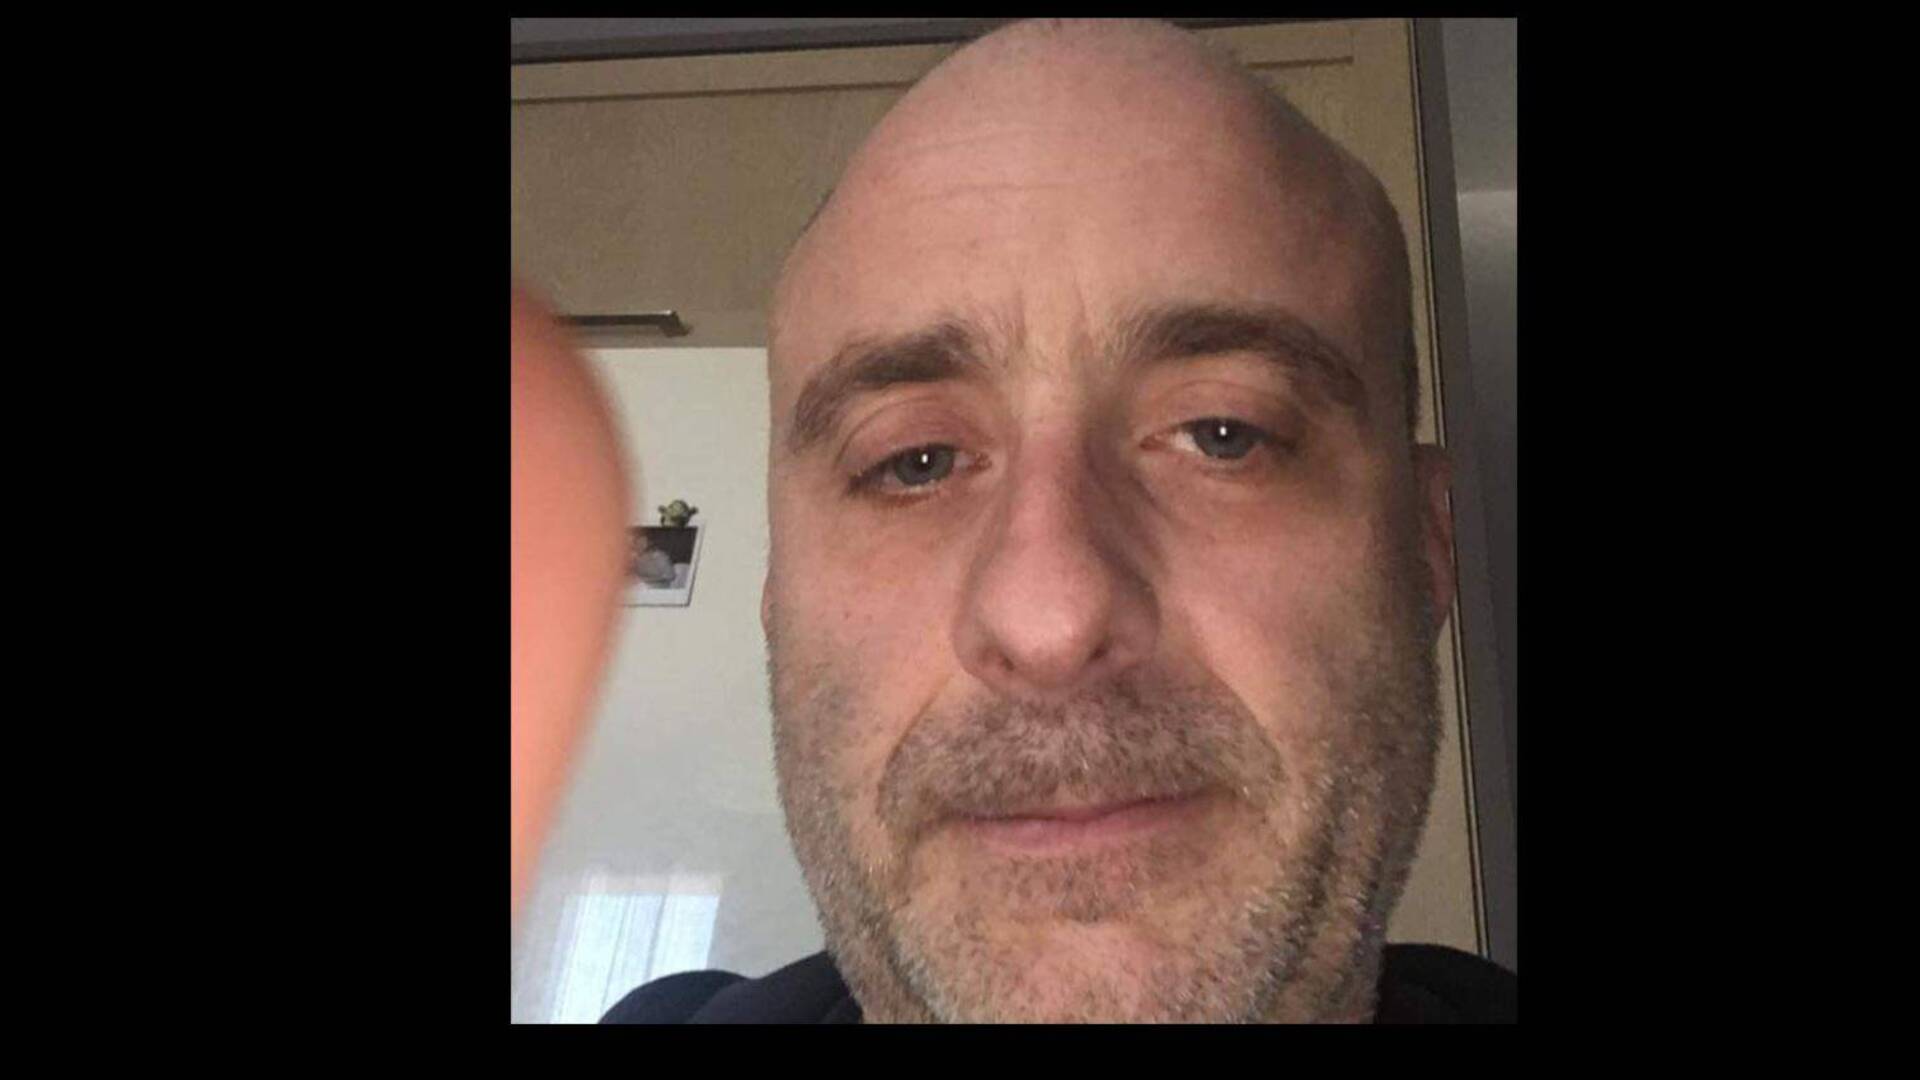 Omicidio-suicidio di Saronno, “Tragedia causata dalla depressione”: il dolore dell’amico di Stefano Rotondi